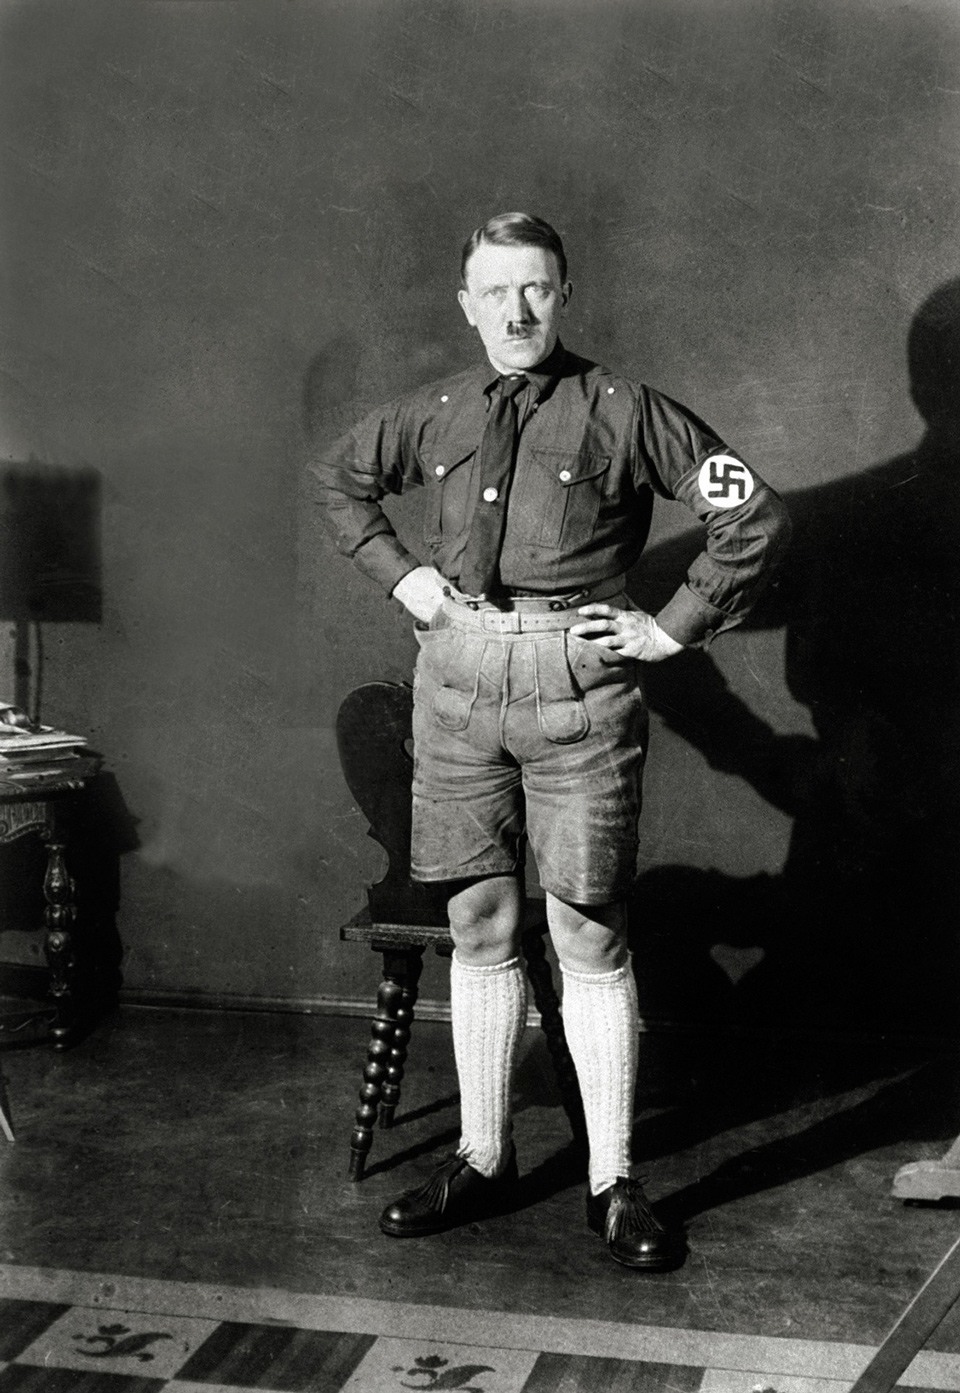 صور محرجة لأدولف هتلر قام بحضر نشرها بعد أن استوعب الأمر